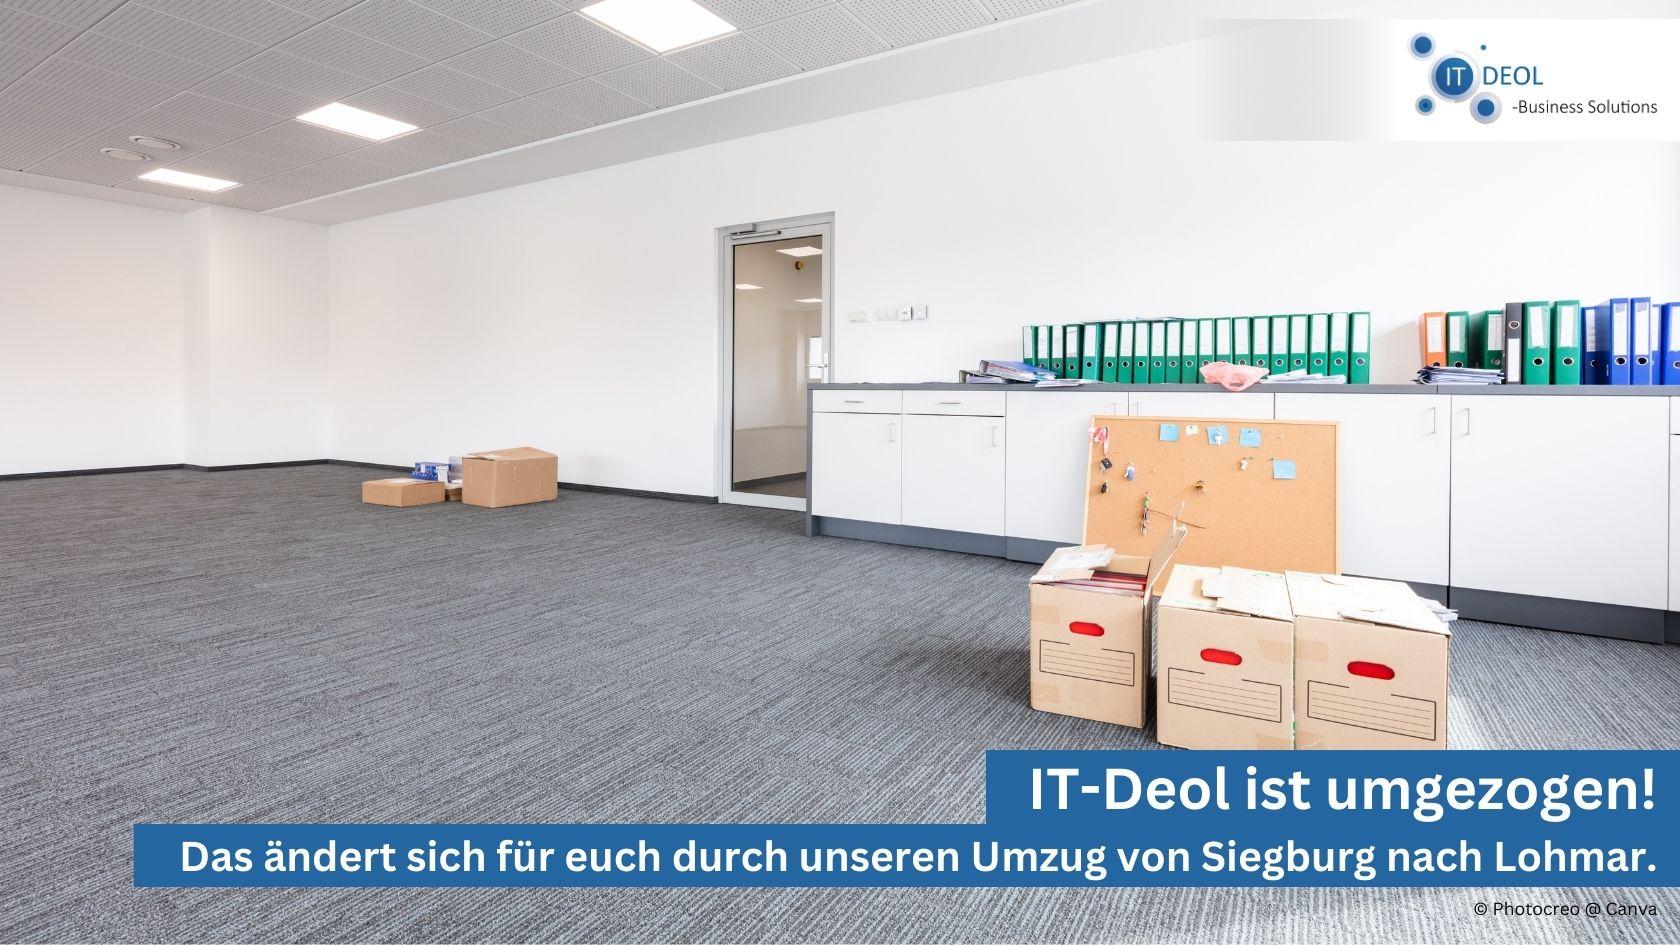 IT-Dienstleister in Lohmar – IT-Deol zieht von Siegburg nach Lohmar!